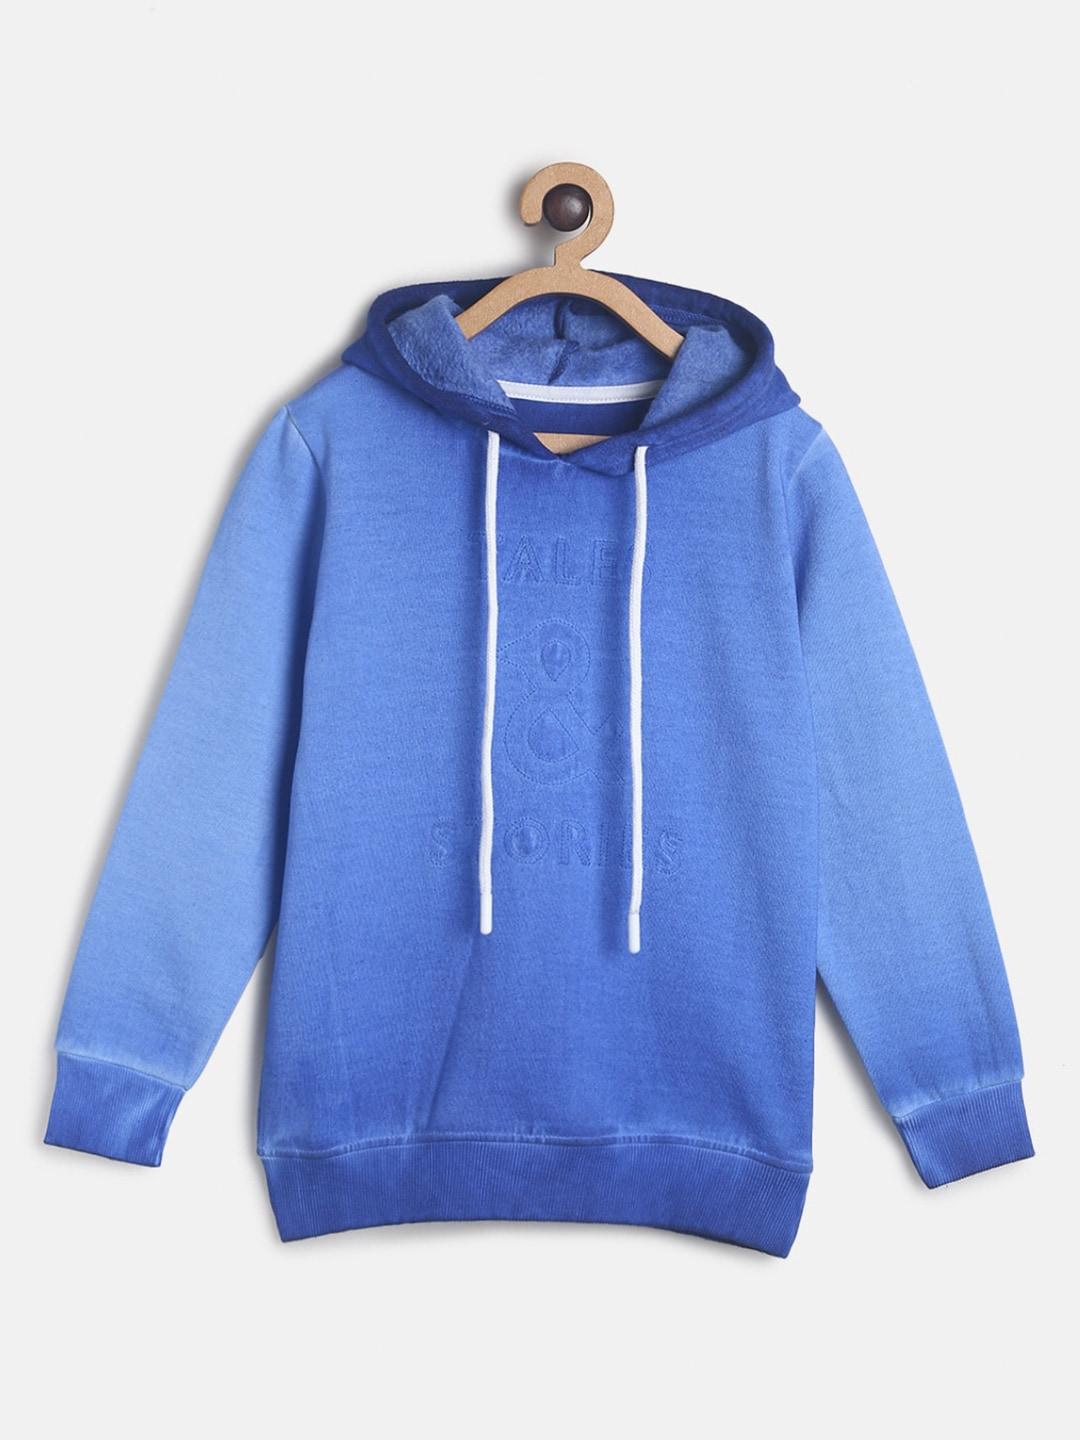 tales-&-stories-boys-blue-hooded-sweatshirt